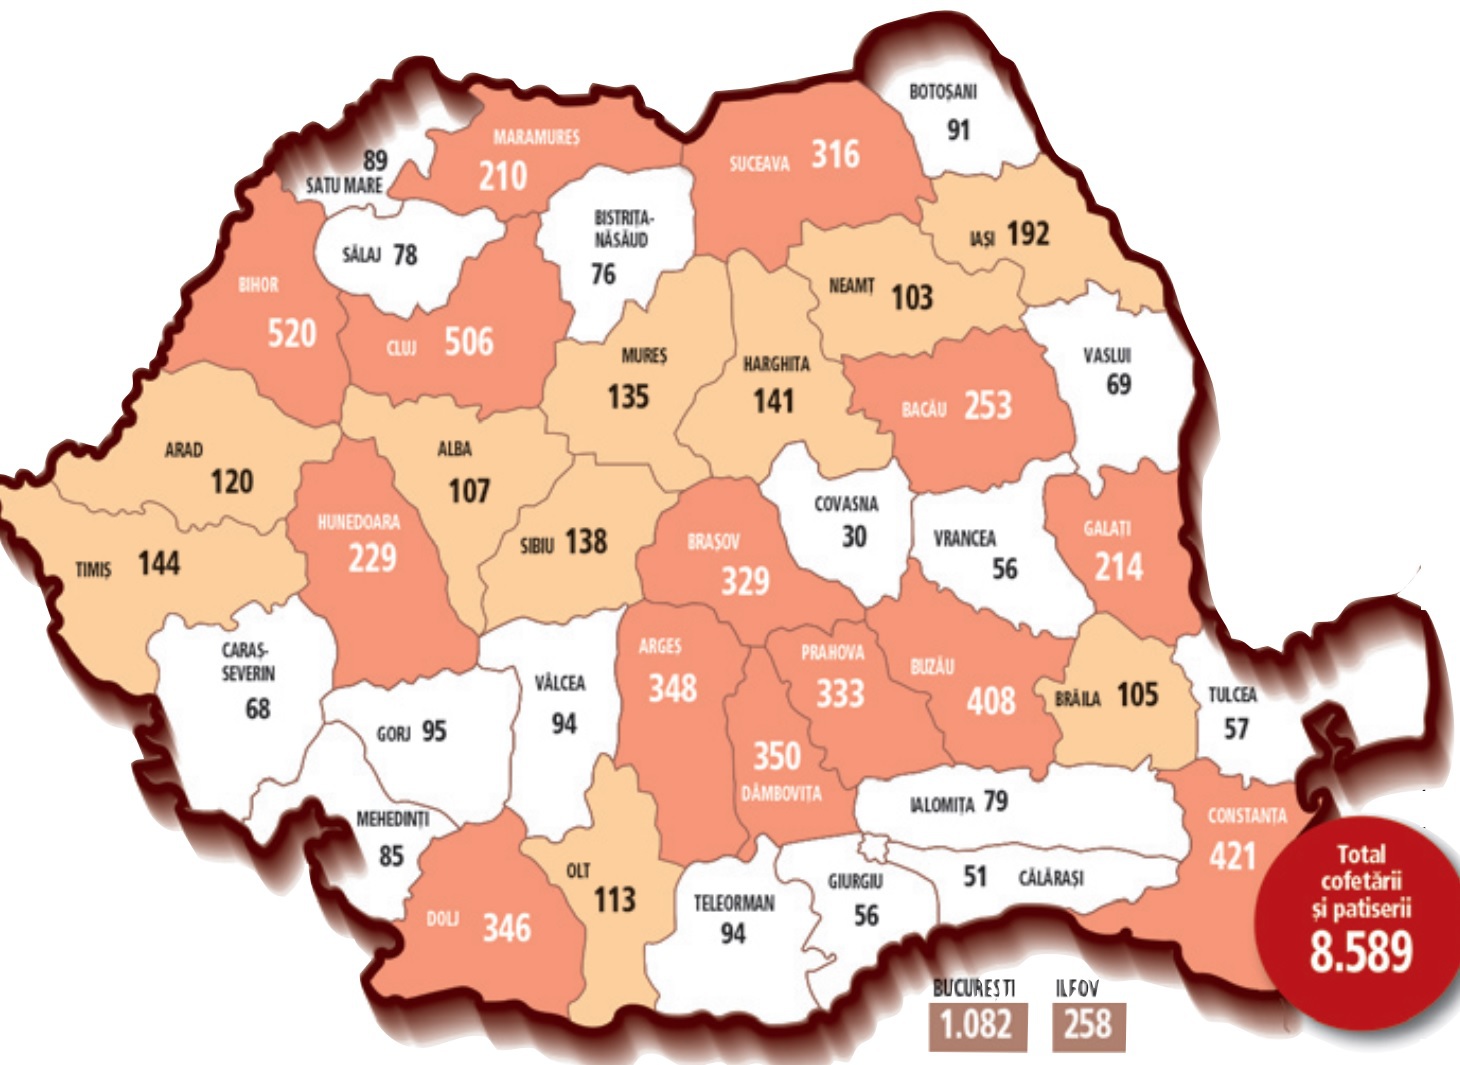 Harta cofetăriilor şi patiseriilor din România: România are 8.600 de unităţi, adică una la fiecare 2.200 de consumatori. Este interesant de observat că harta cofetăriilor şi patiseriilor nu este, spre deosebire de multe altele, o copie fidelă a hărţii economice